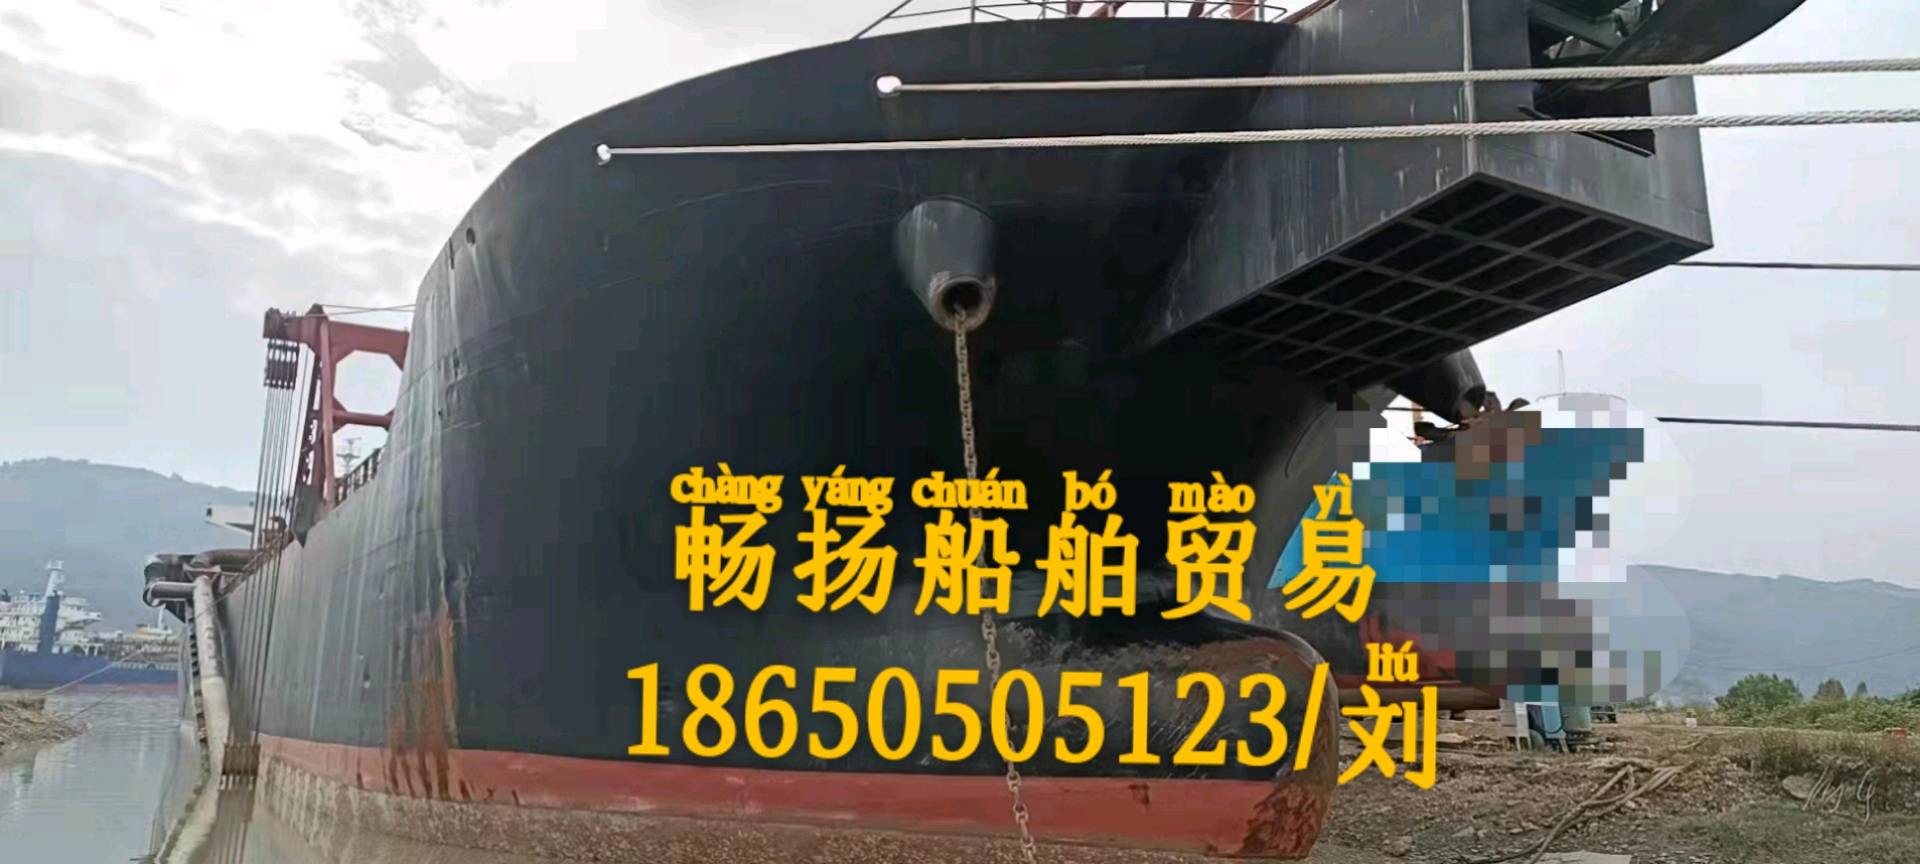 出售12000吨沙船